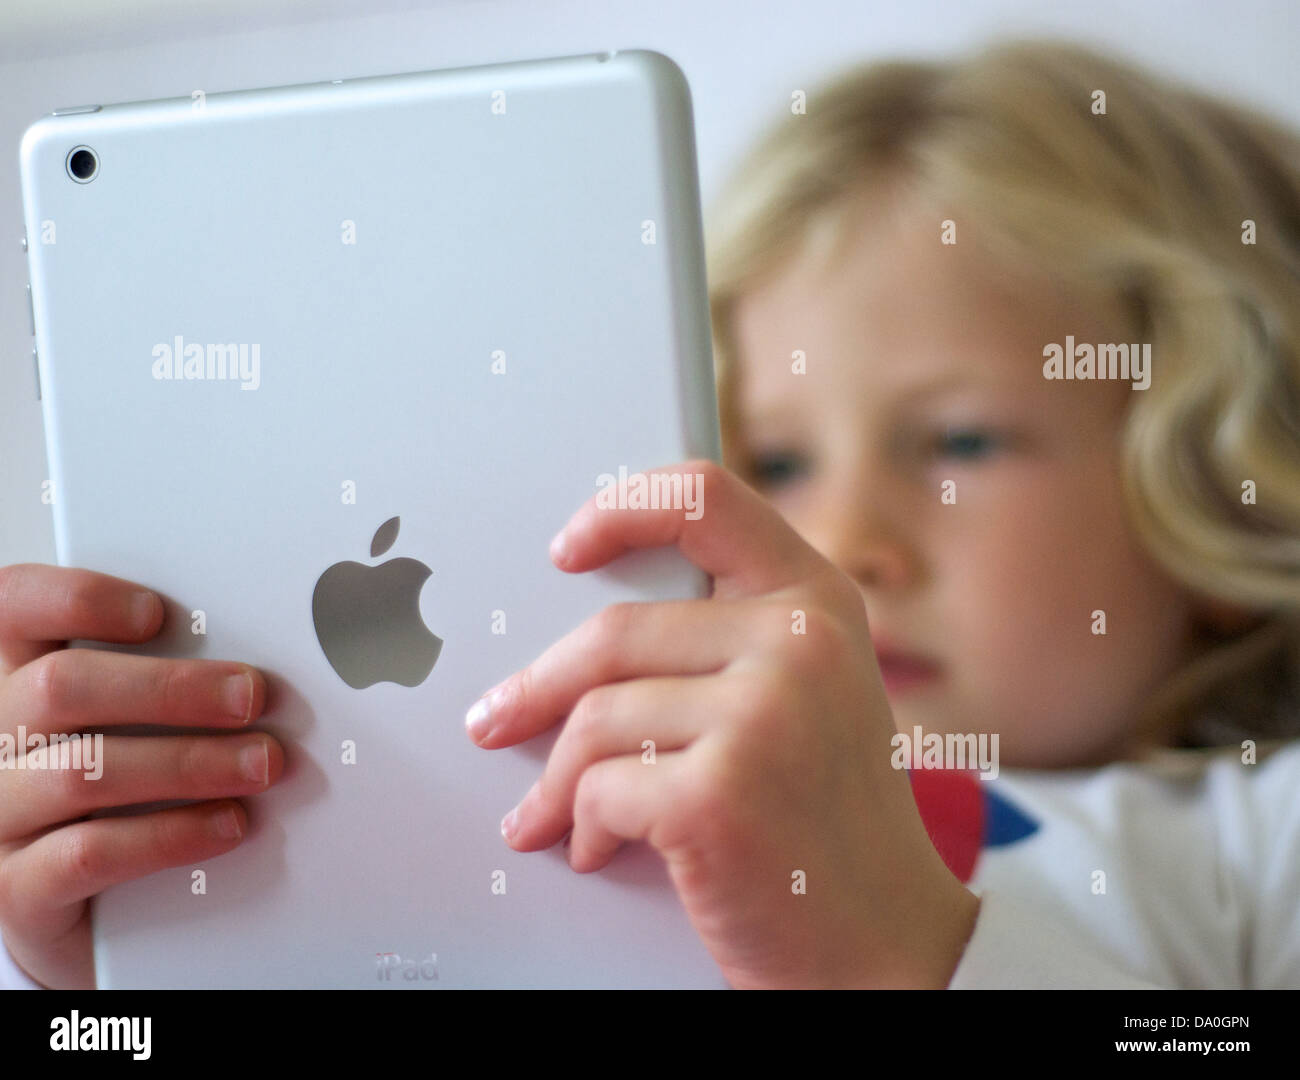 Young girl using an iPad mini Stock Photo